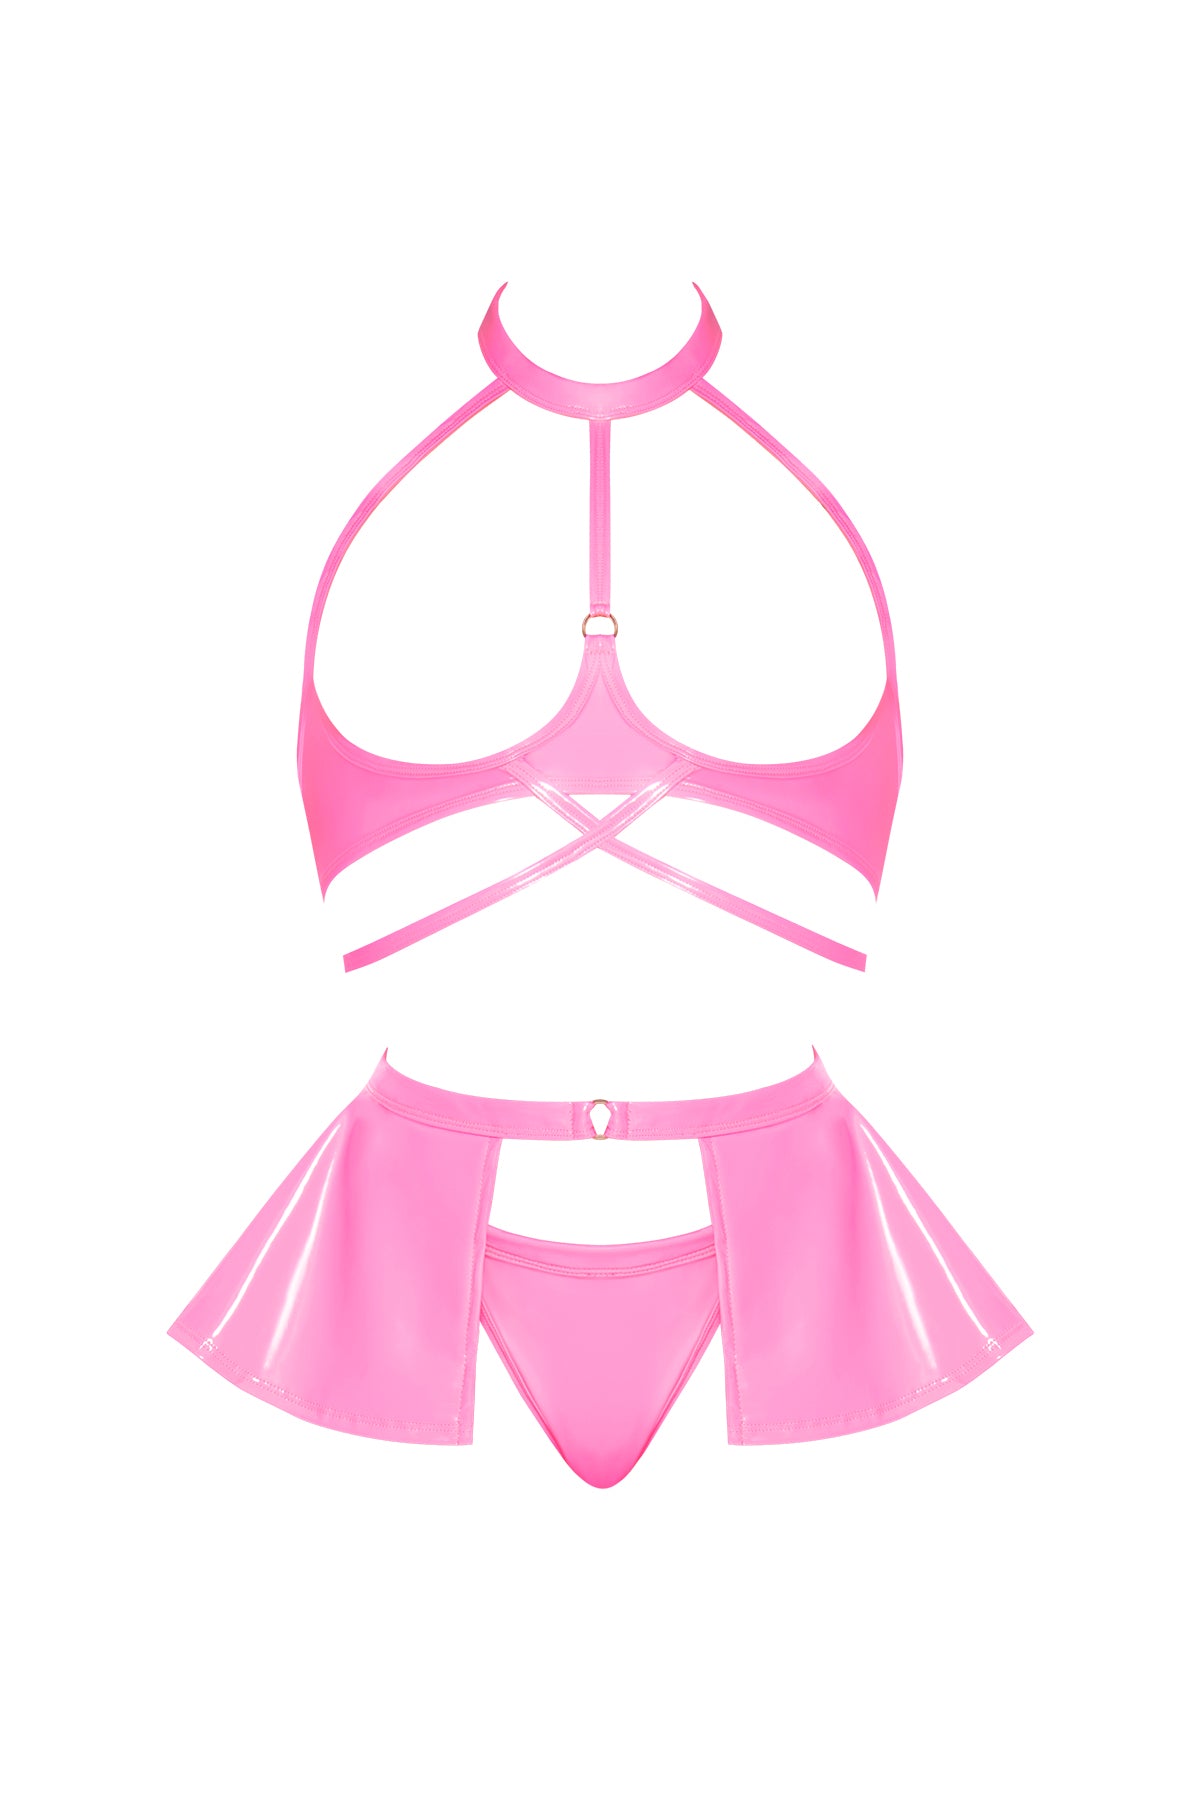 Magic Silk Hard Candy Open Cup Halter Bra, Skirt & Thong Pink